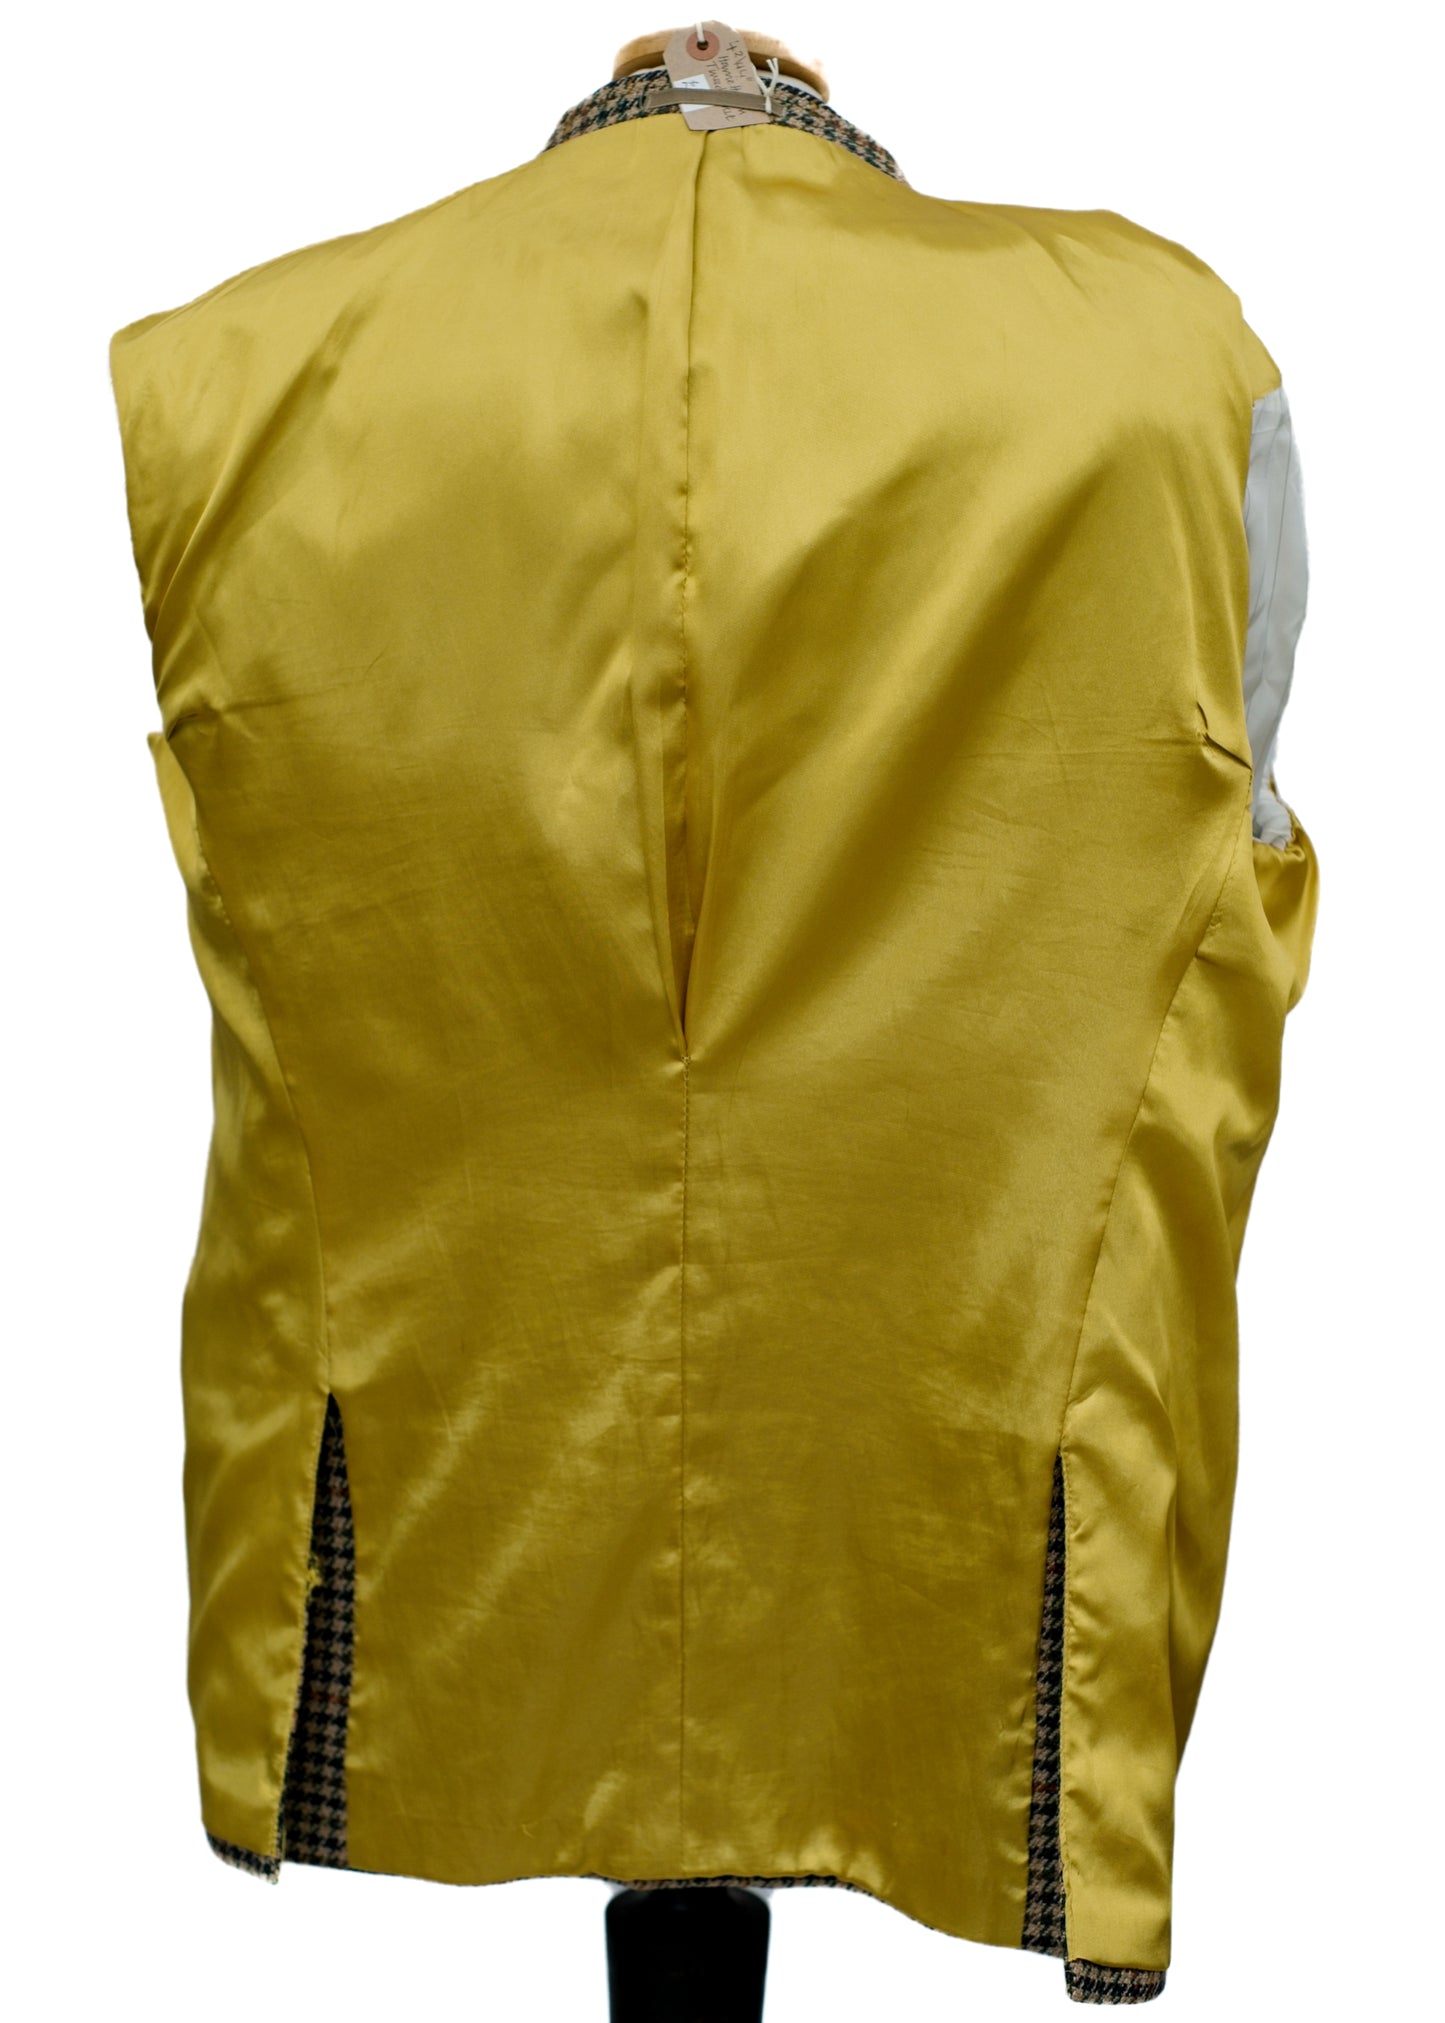 Vintage Tweed Dogtooth Check Jacket • Harvie hudson • 42R